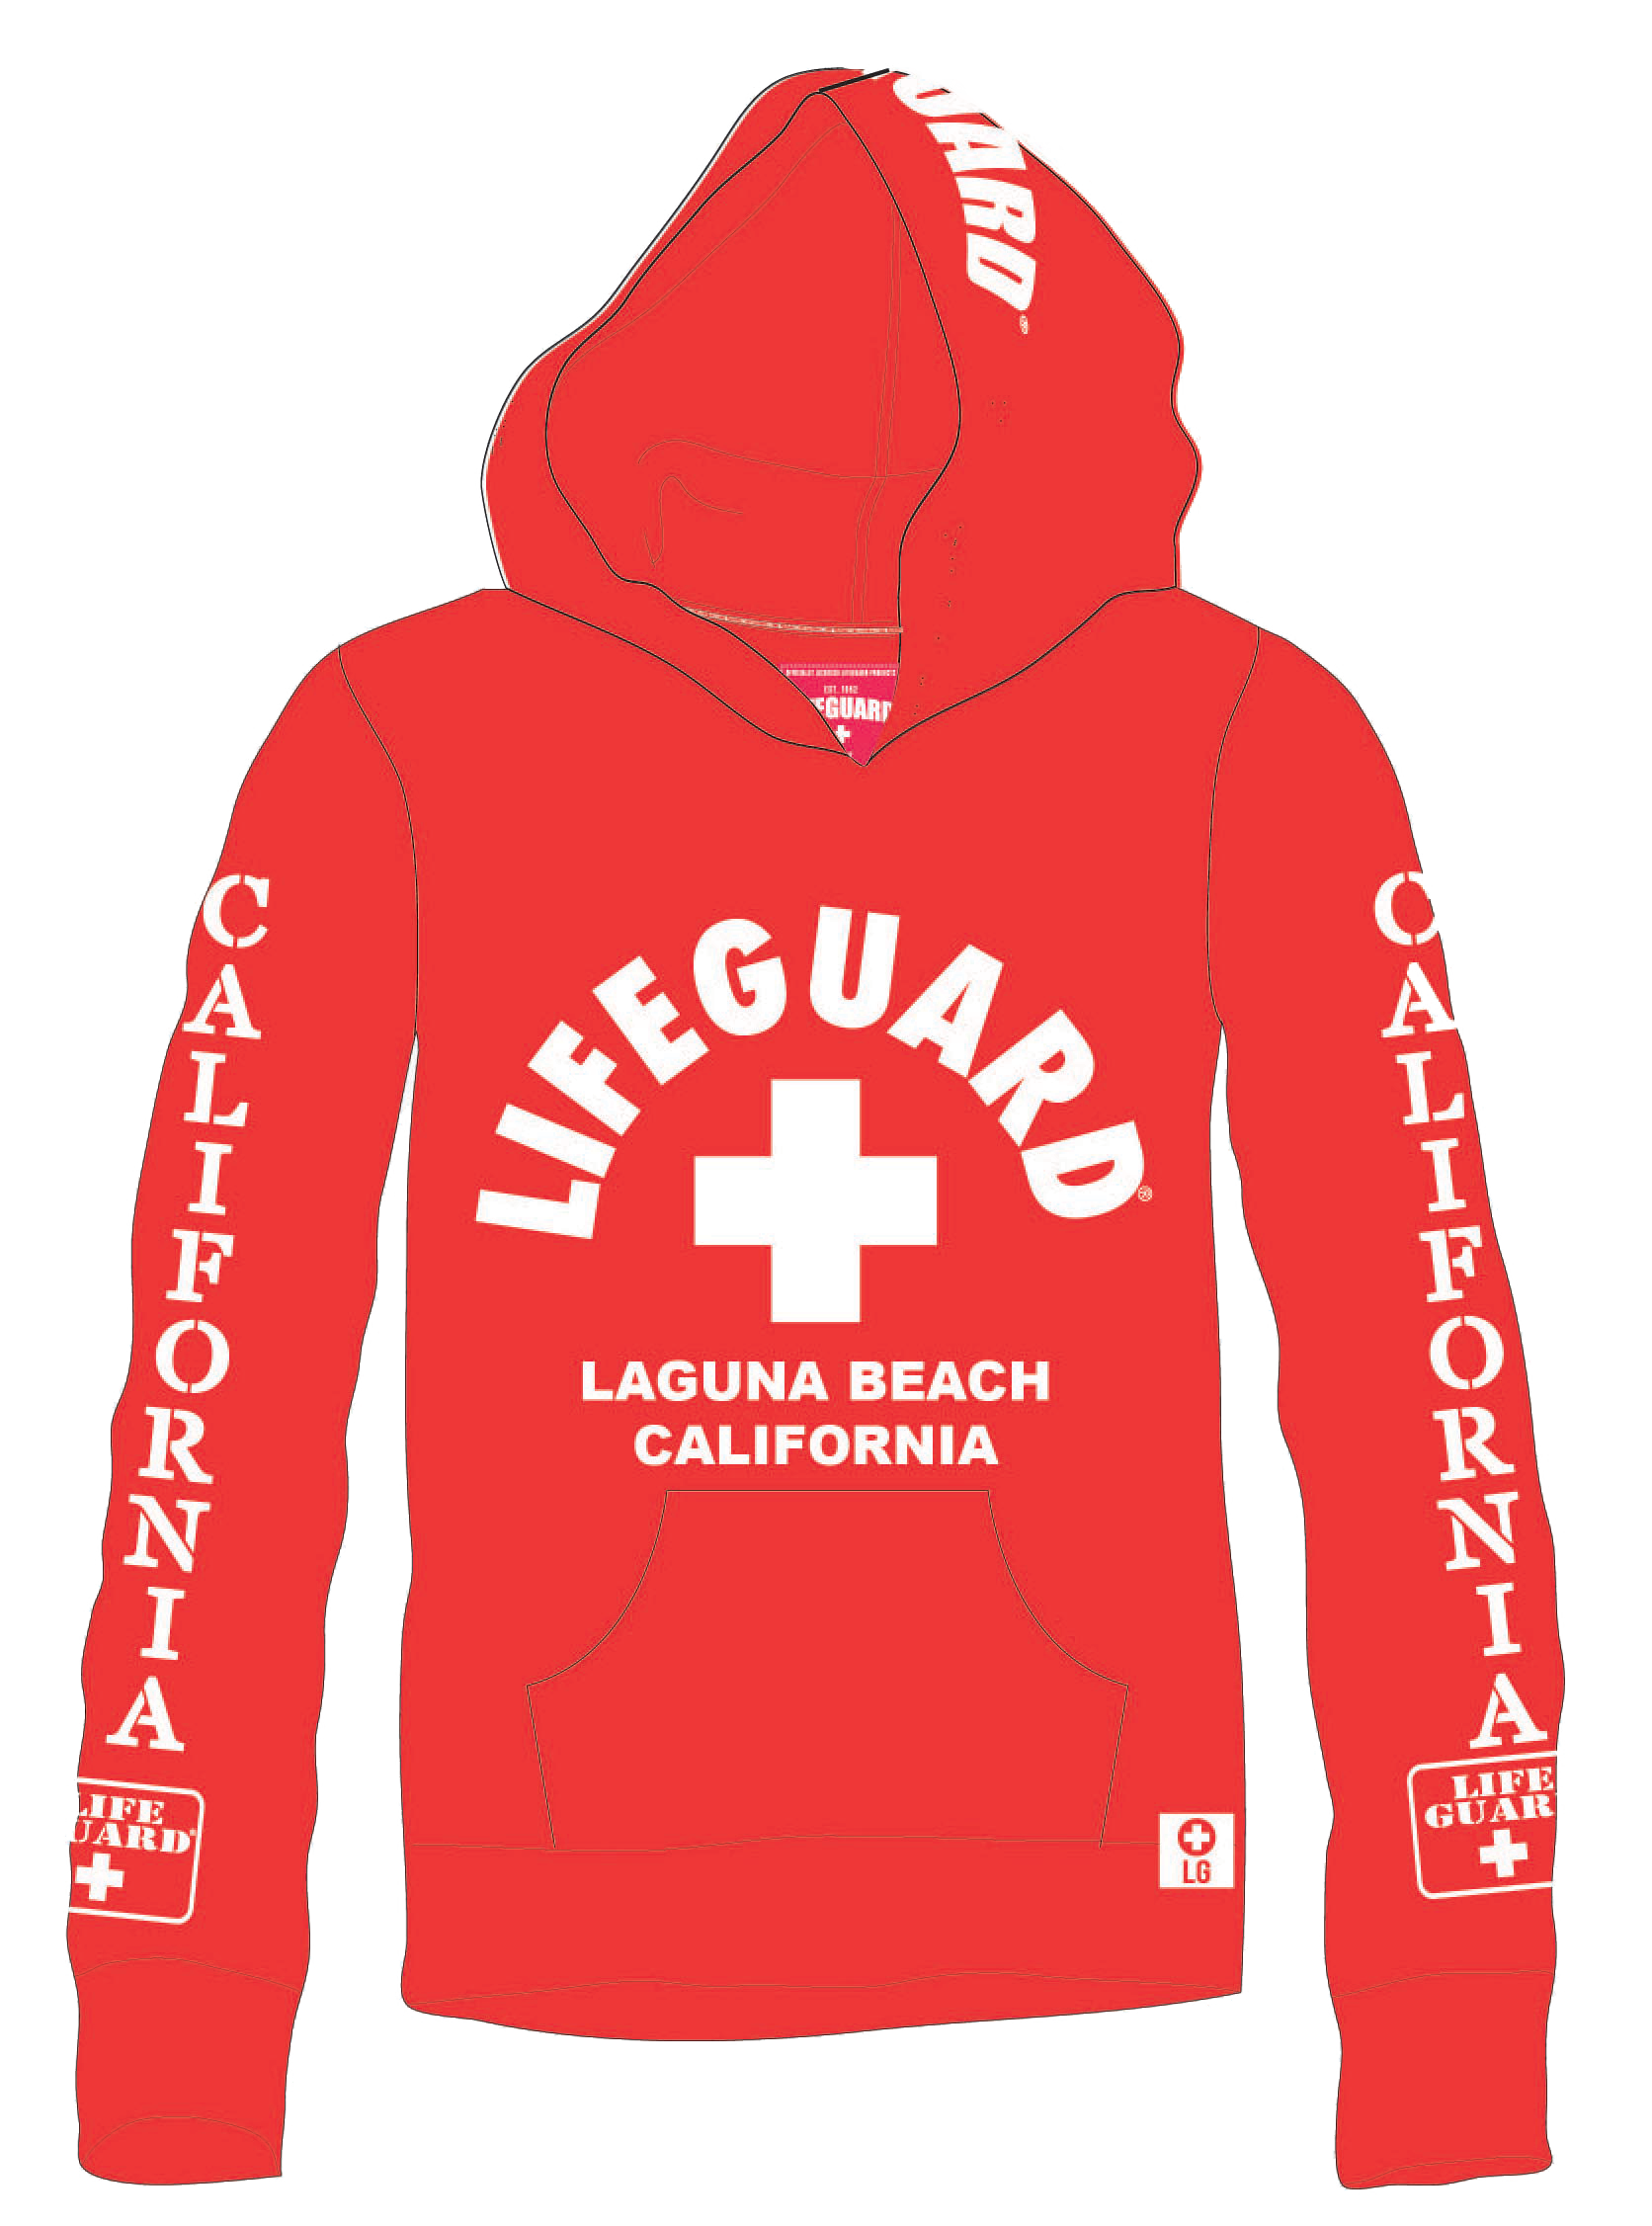 LIFEGUARD Hoodie - Cotton Mens Sweatshirt Cancun